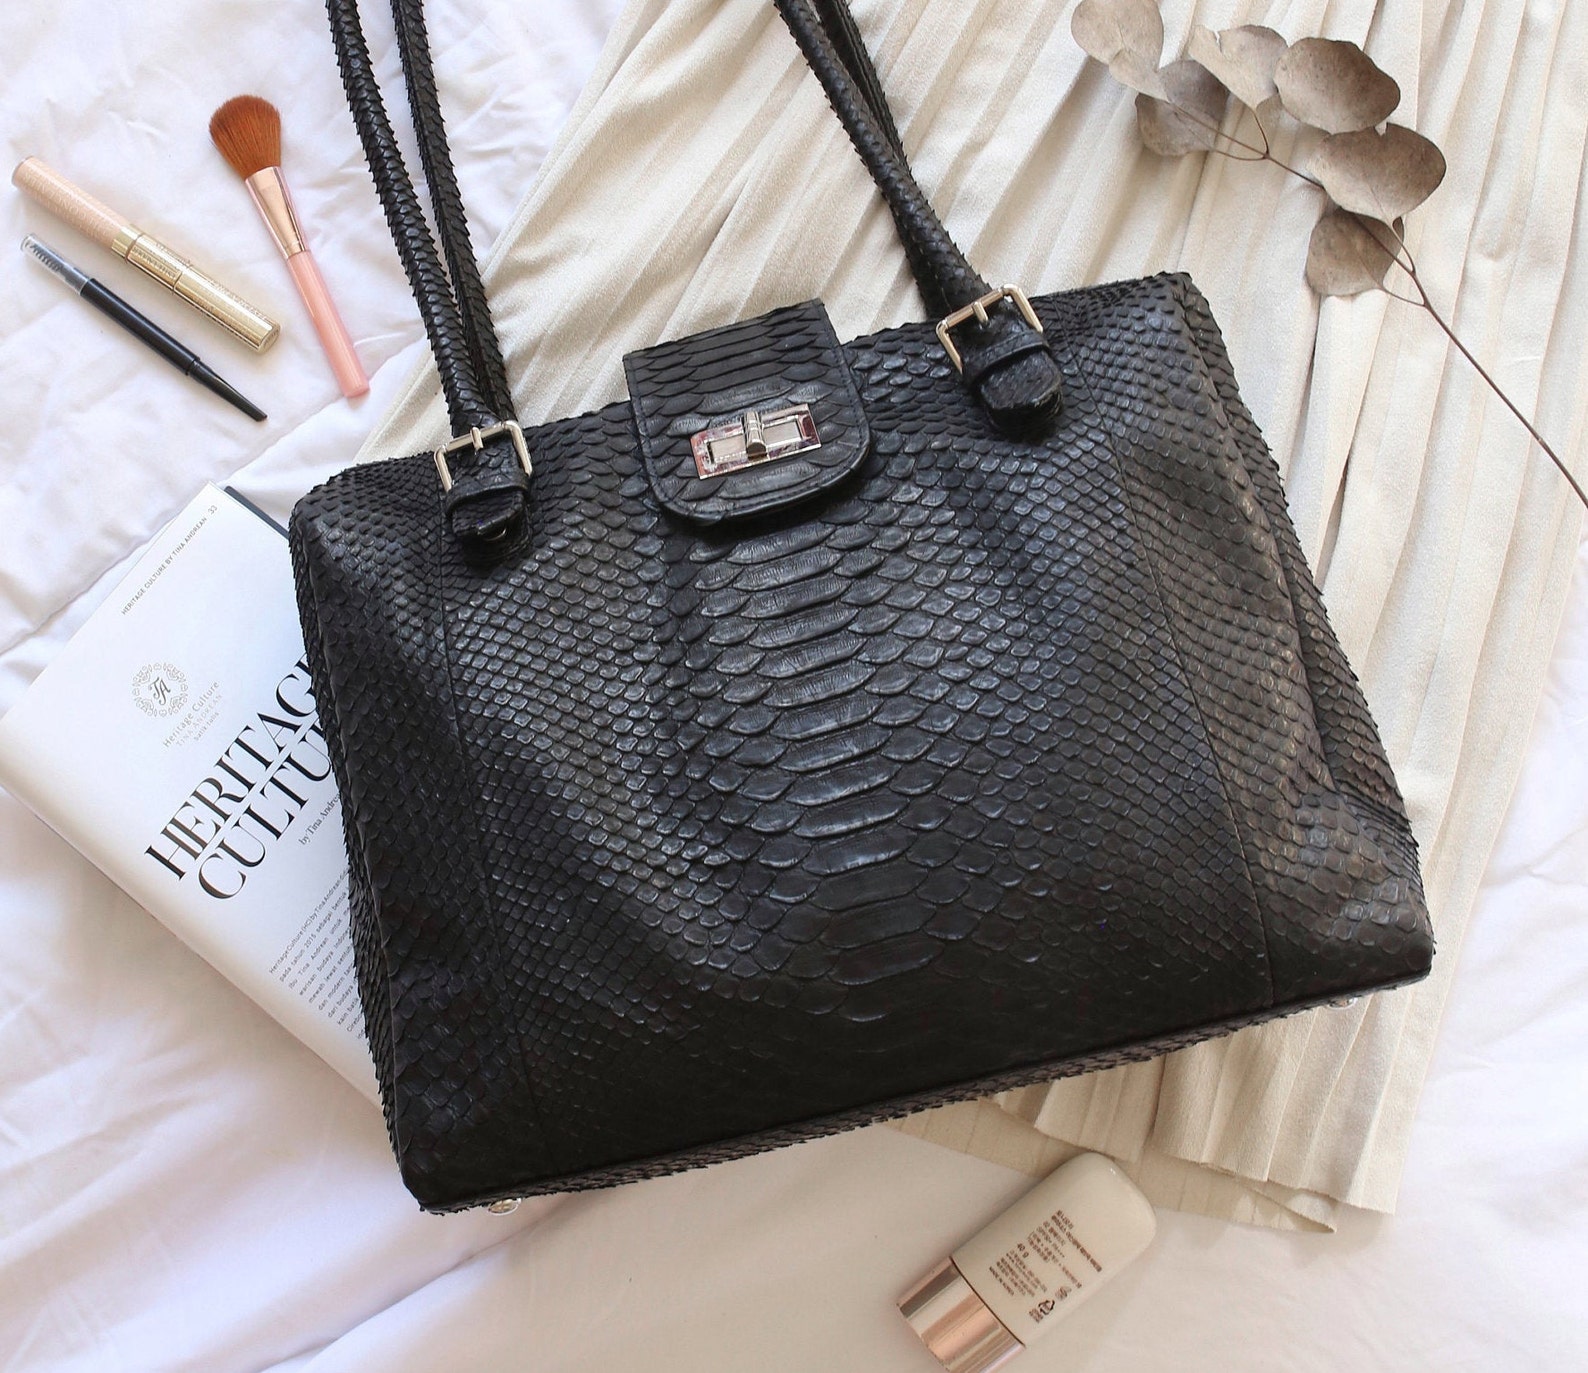 Genuine Python leather designer handbag for women . Snakeskin | Etsy